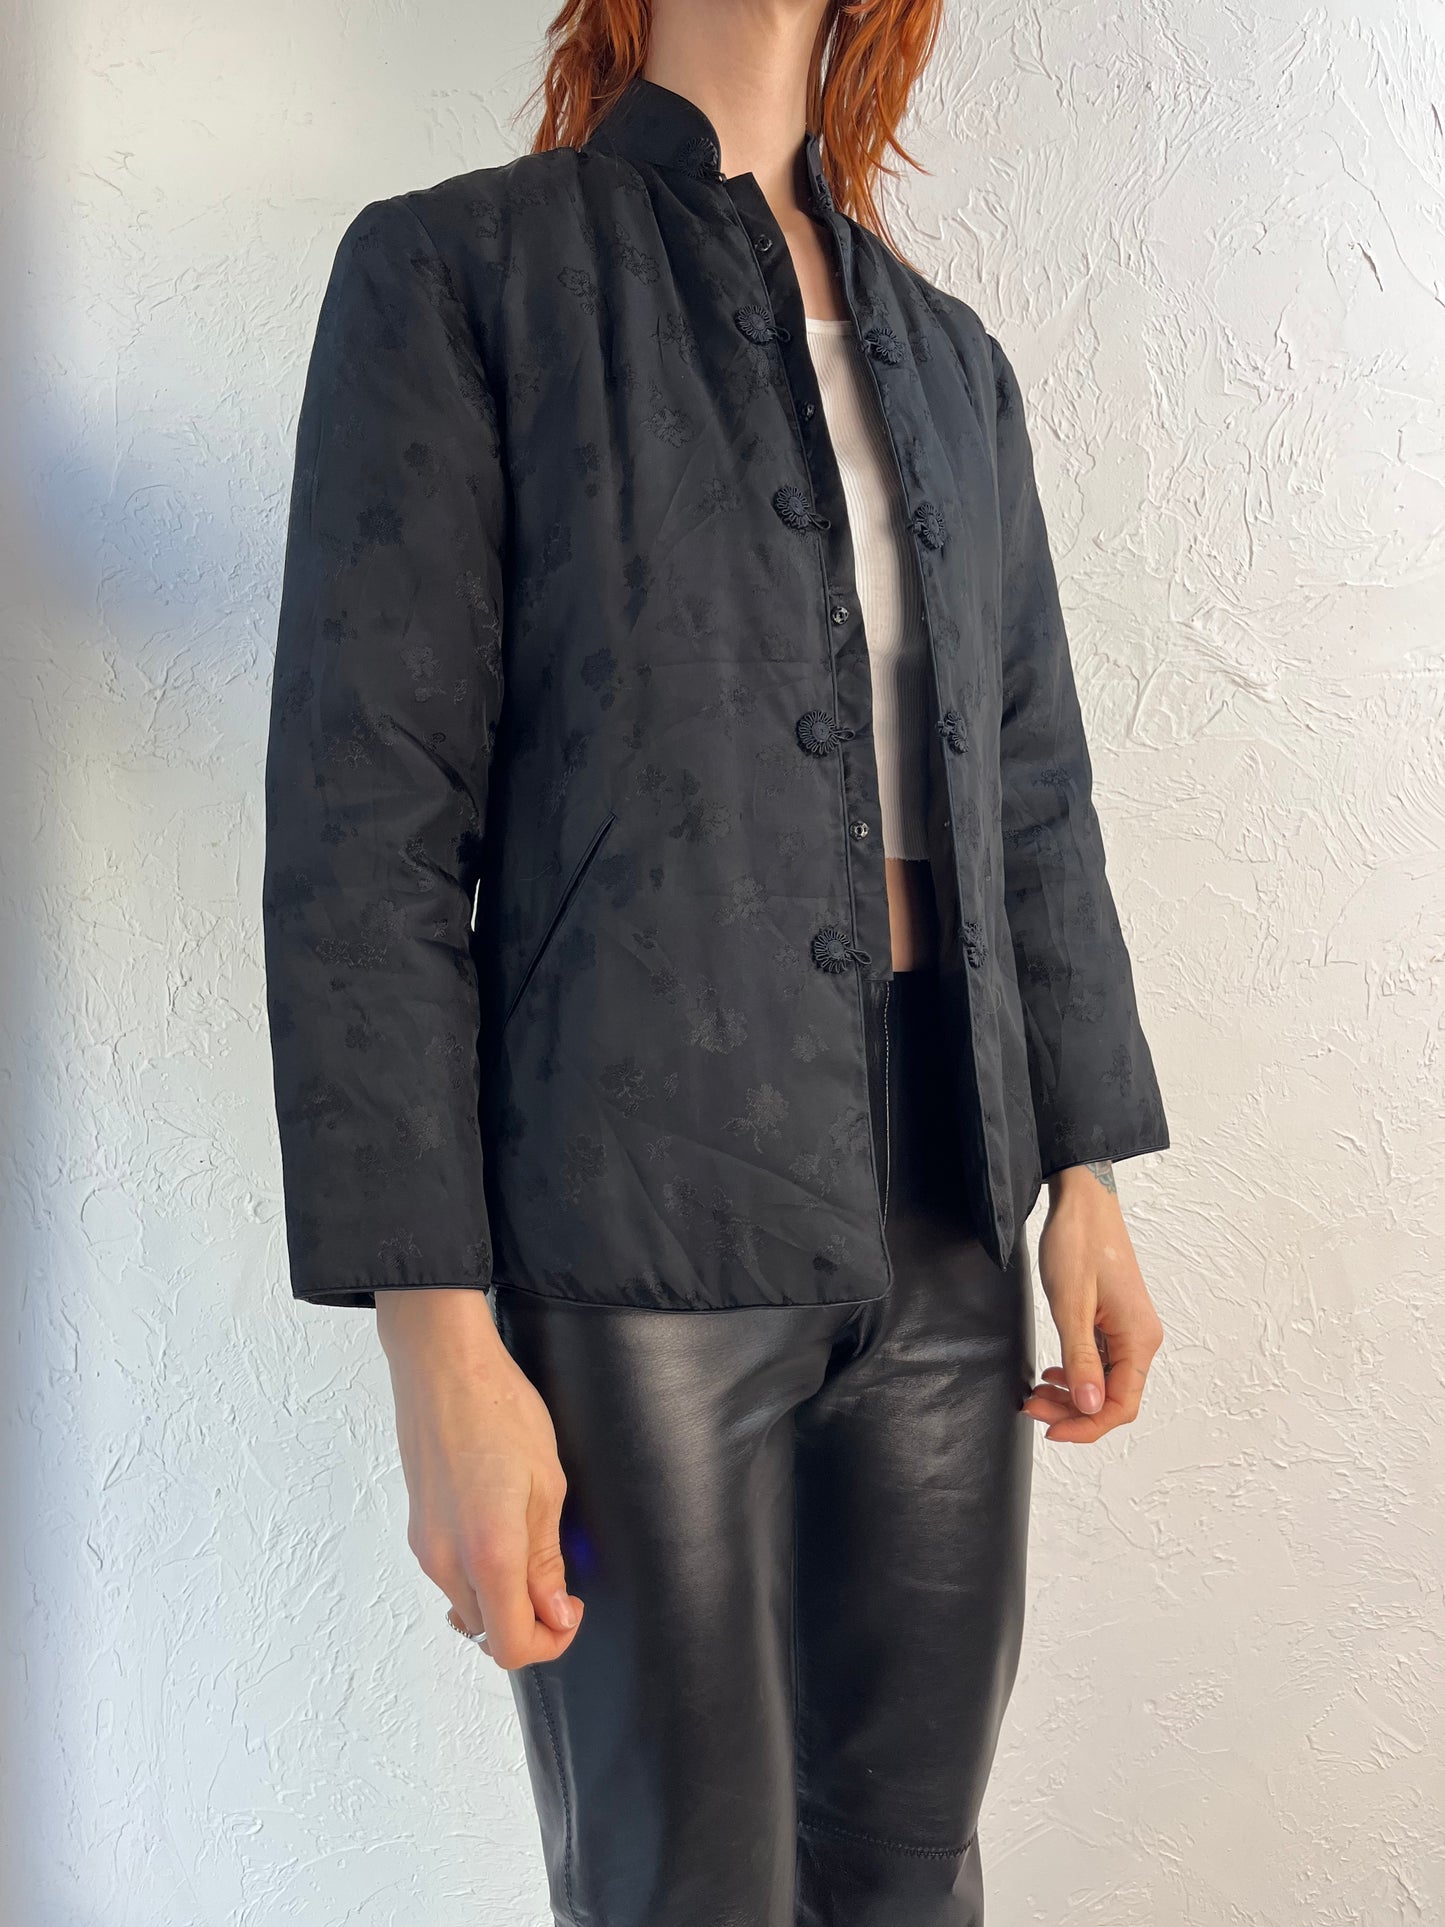 Vintage Black Rayon Brocade Evening Jacket / Small